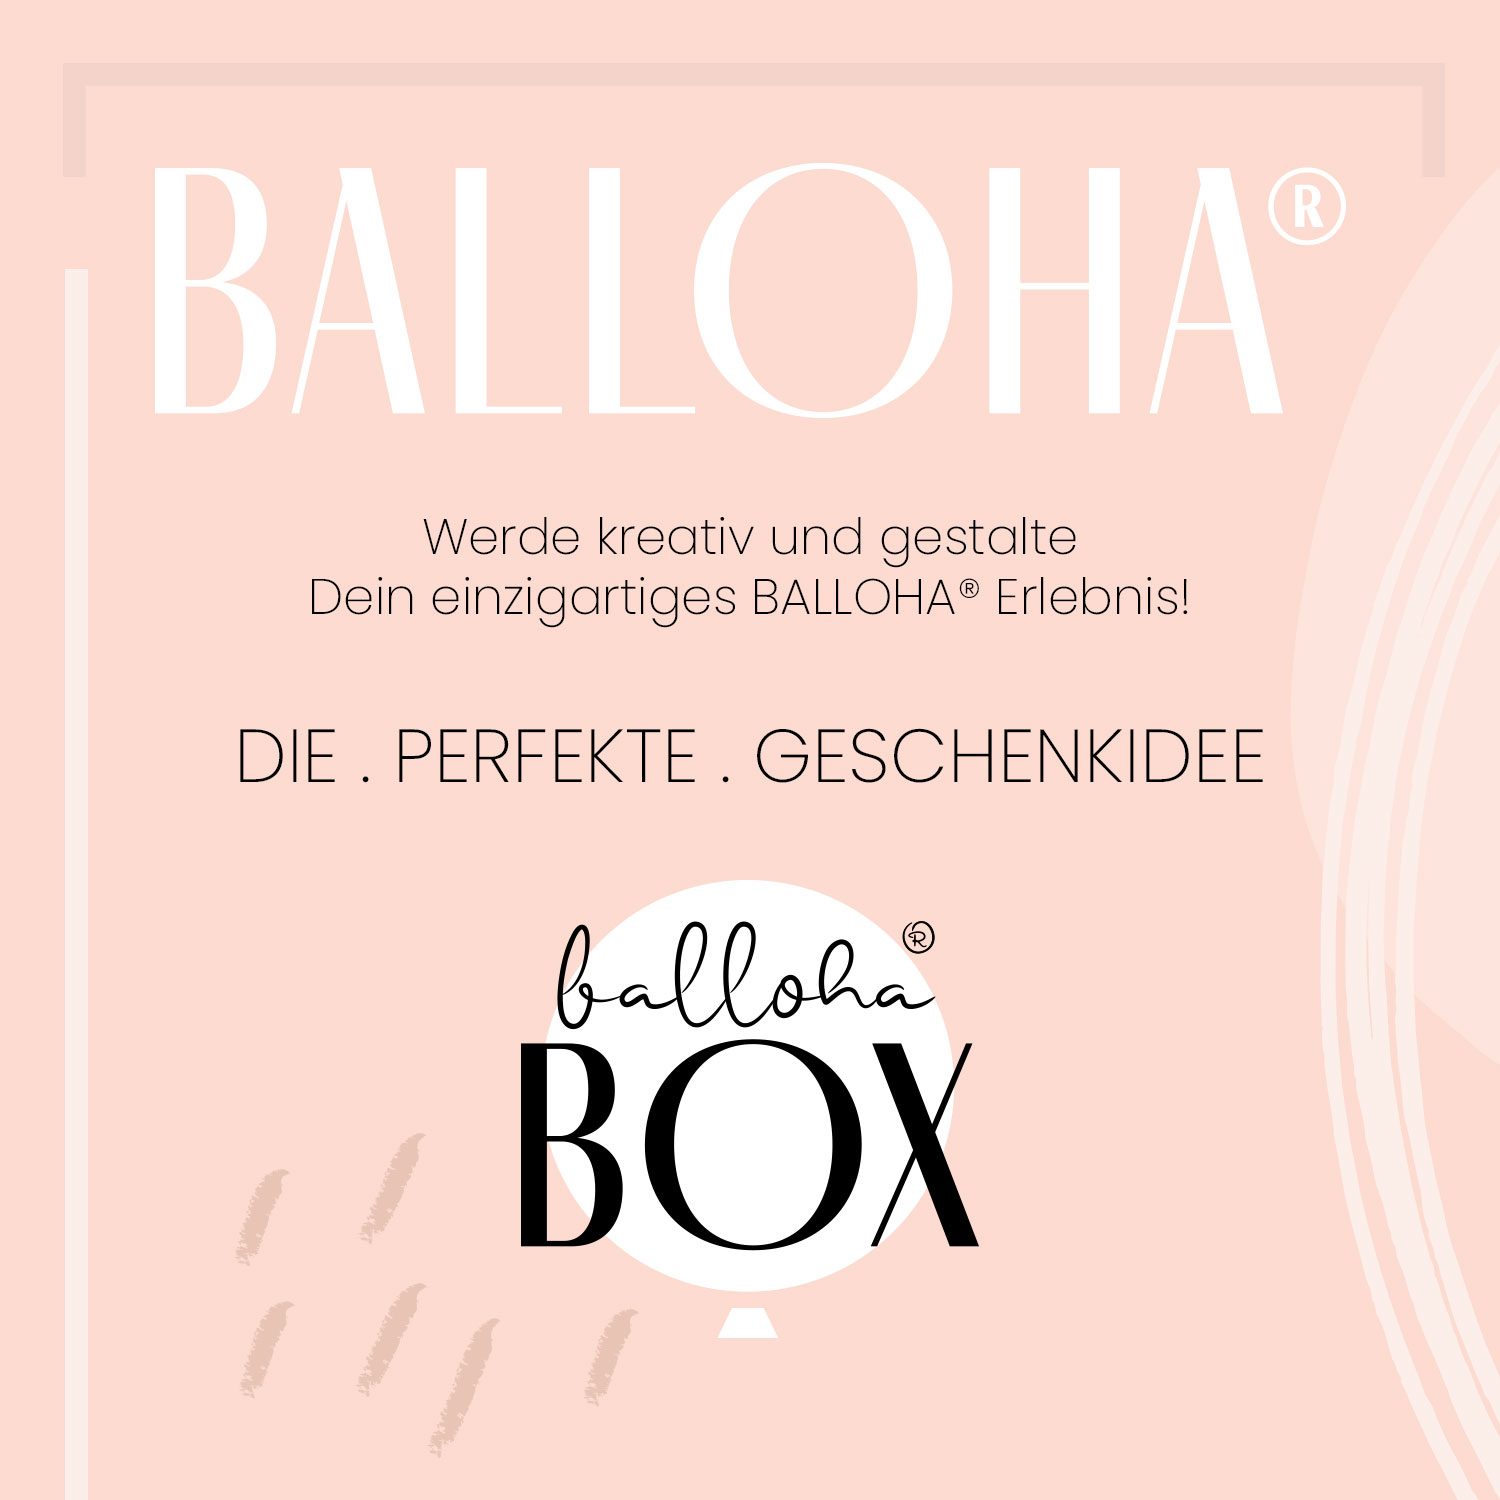 Balloha® Box mit Foto - DIY Baby Boy Leopard